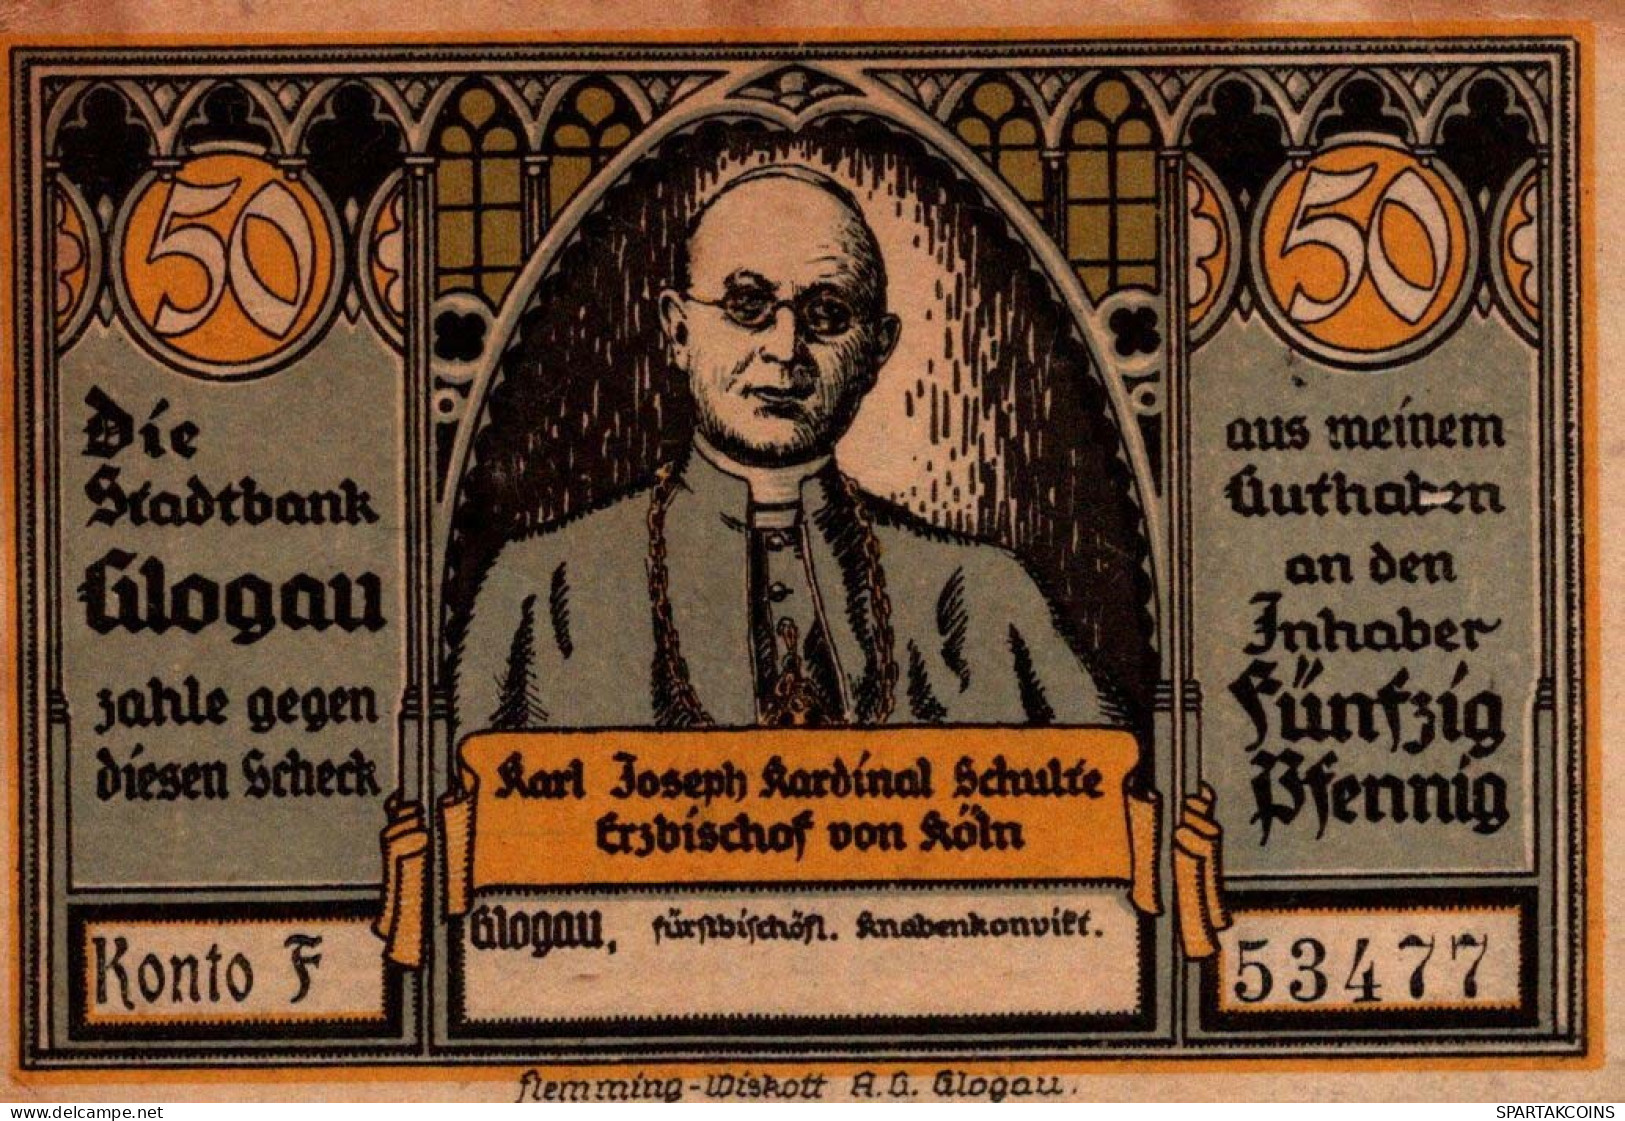 50 PFENNIG 1922 Stadt GLOGAU Niedrigeren Silesia UNC DEUTSCHLAND Notgeld #PC979 - [11] Local Banknote Issues